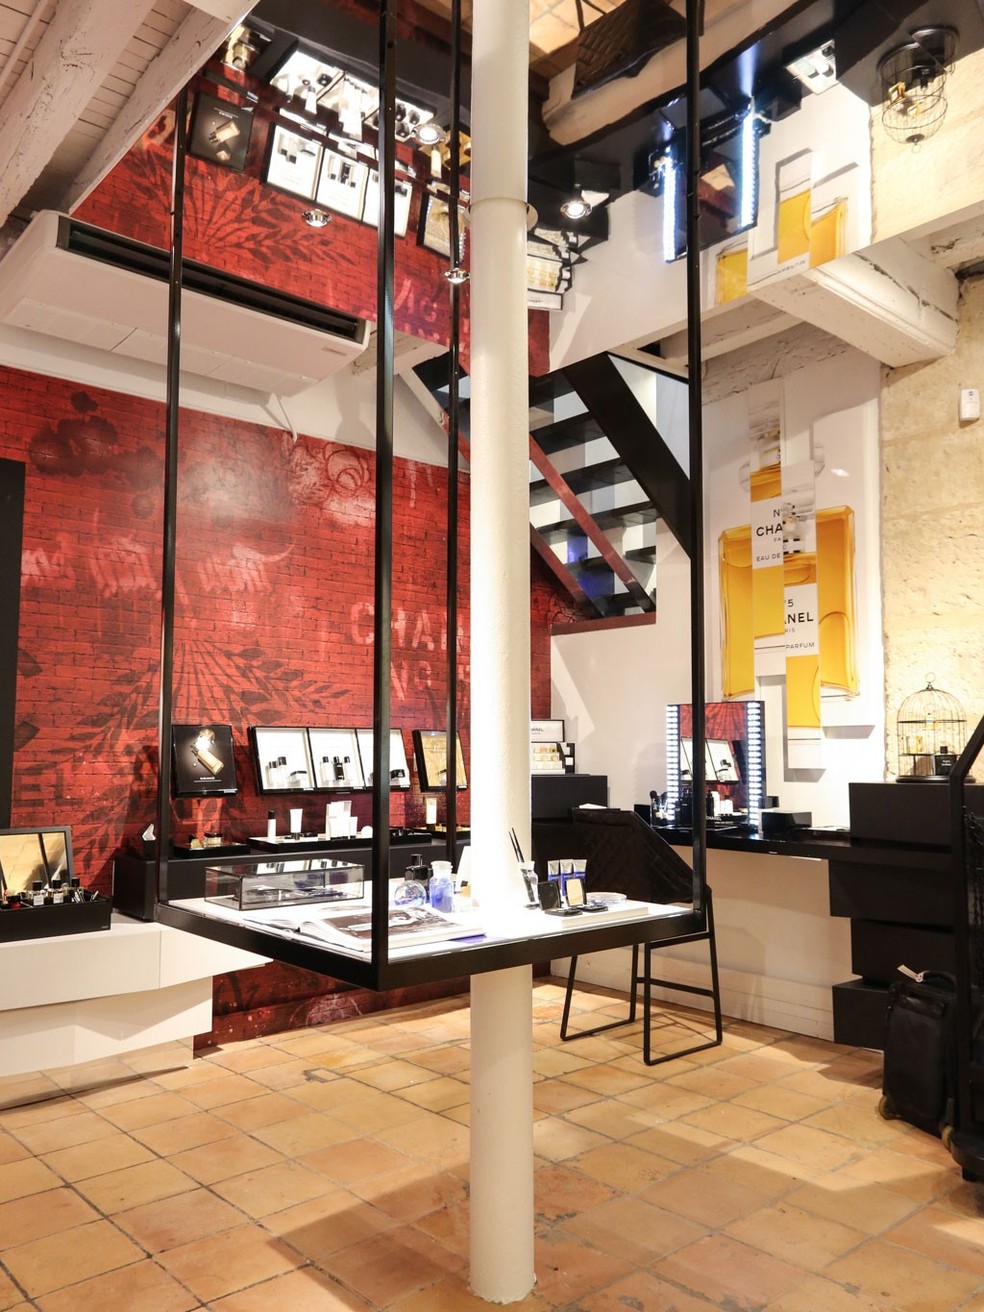 Chanel abre primeira loja de beauté permanente em Paris - Glamurama